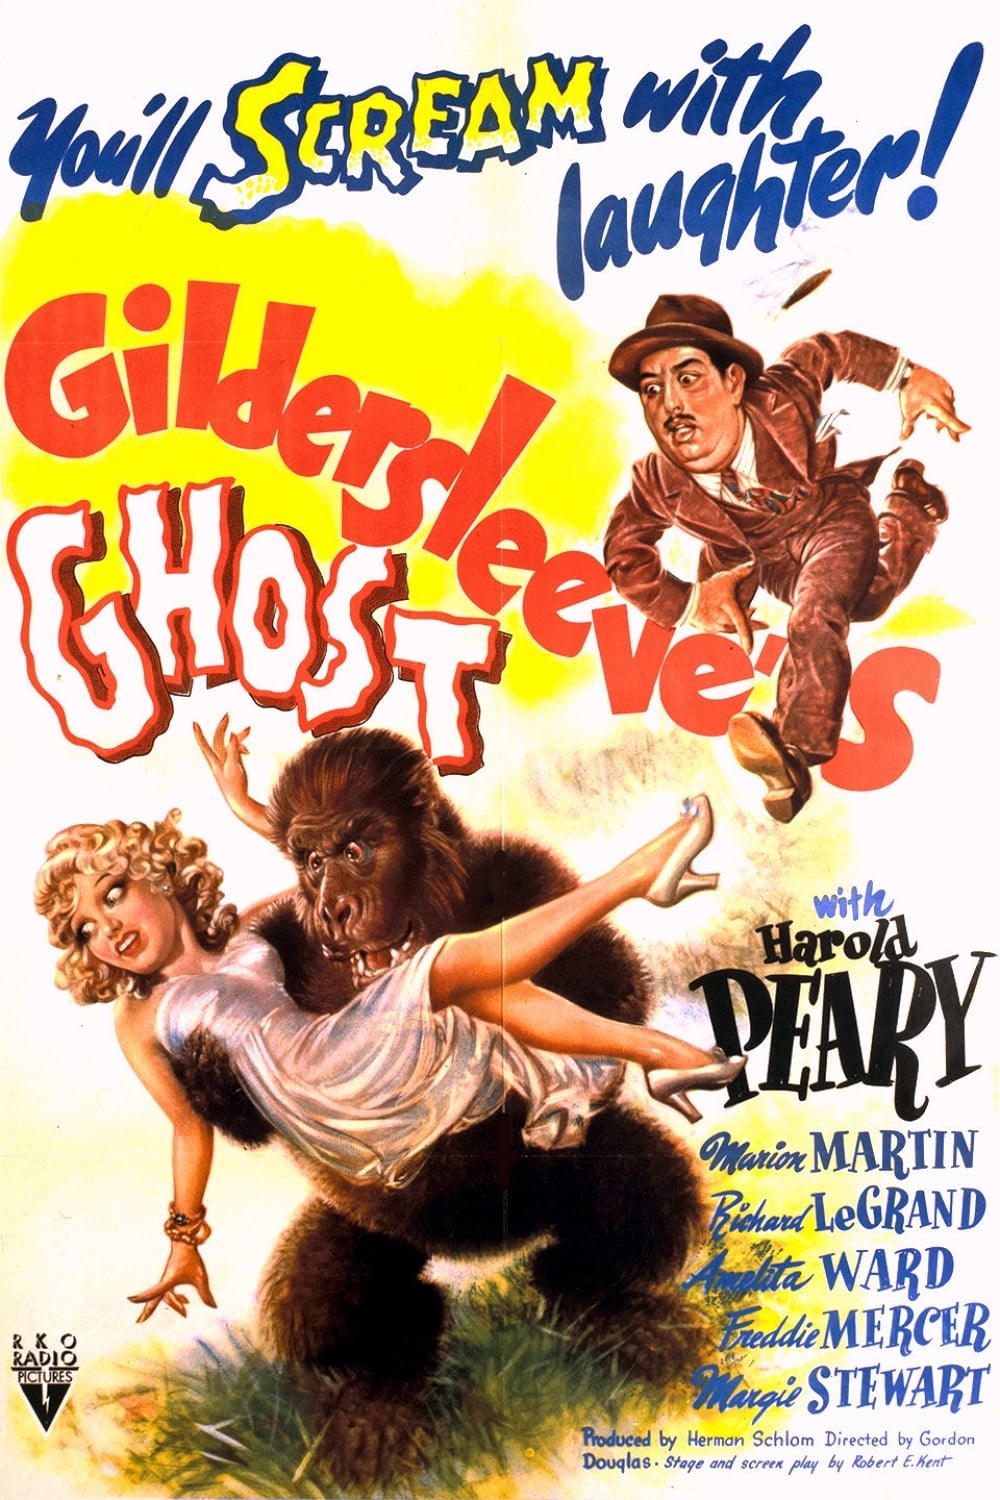 Gildersleeve's Ghost (1944)